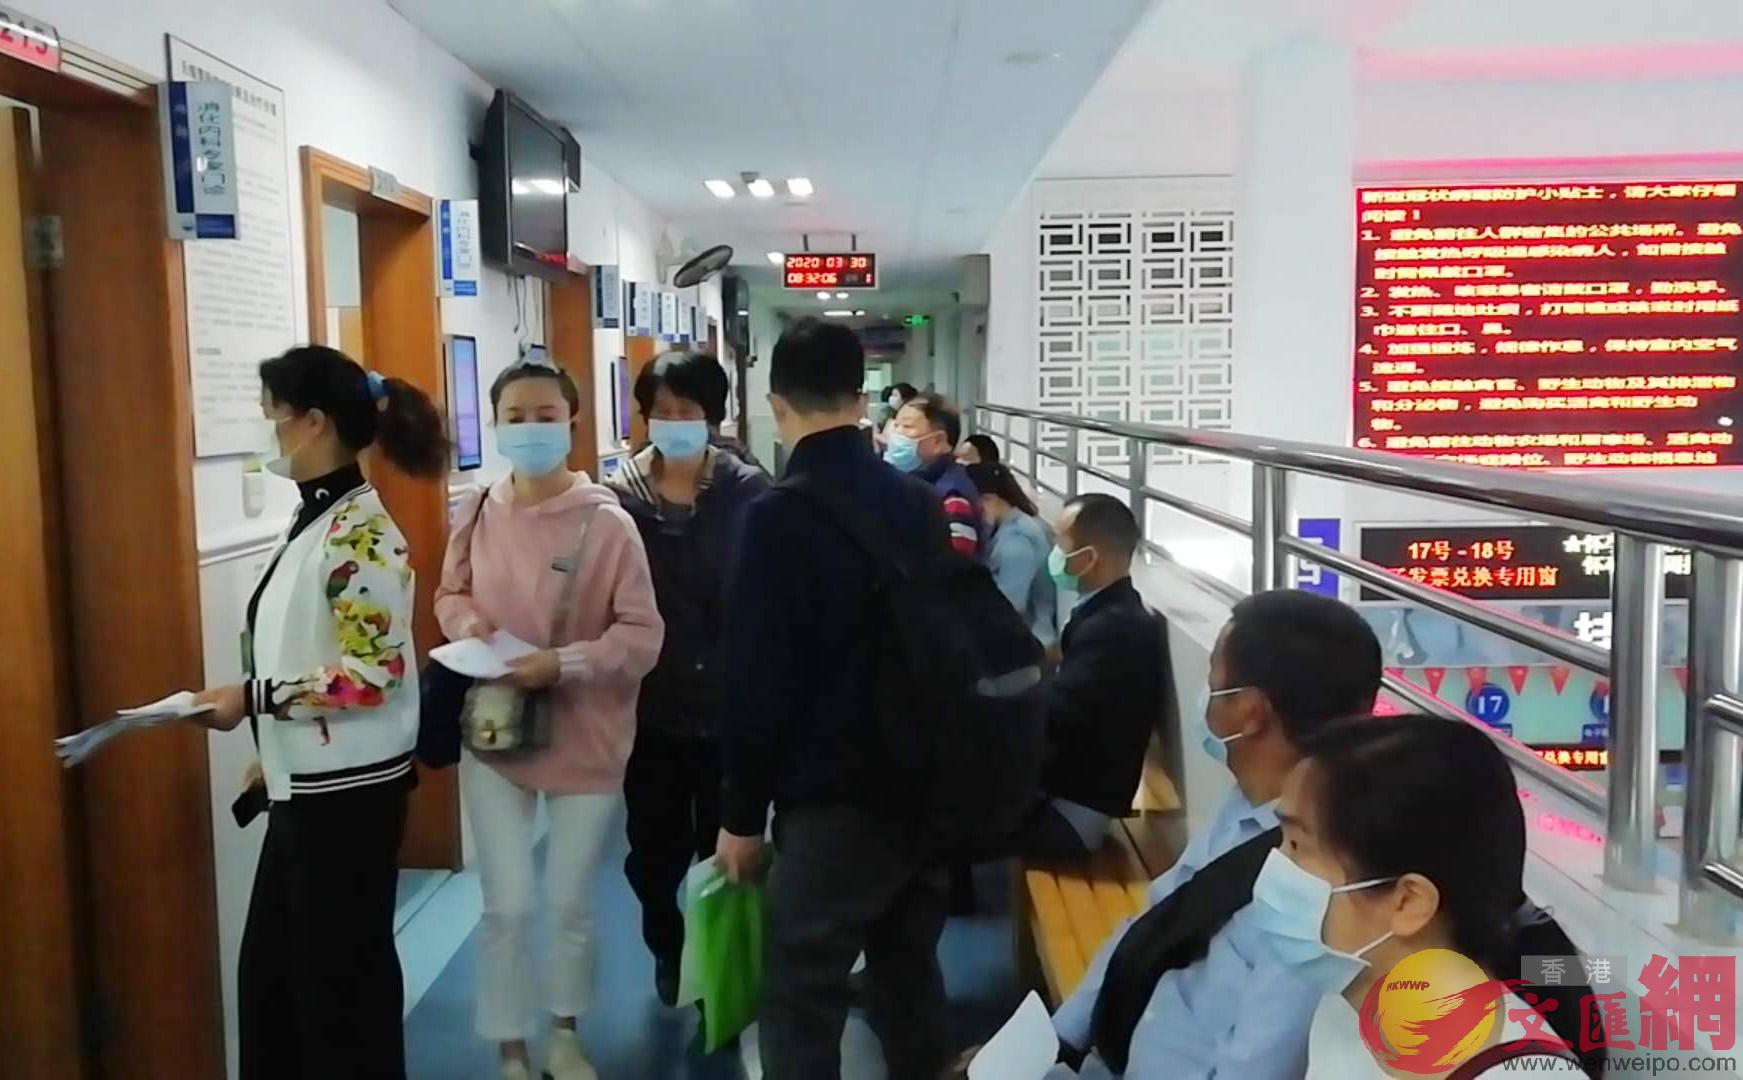 許多患者在排隊等候總診 記者 李昌鴻 攝